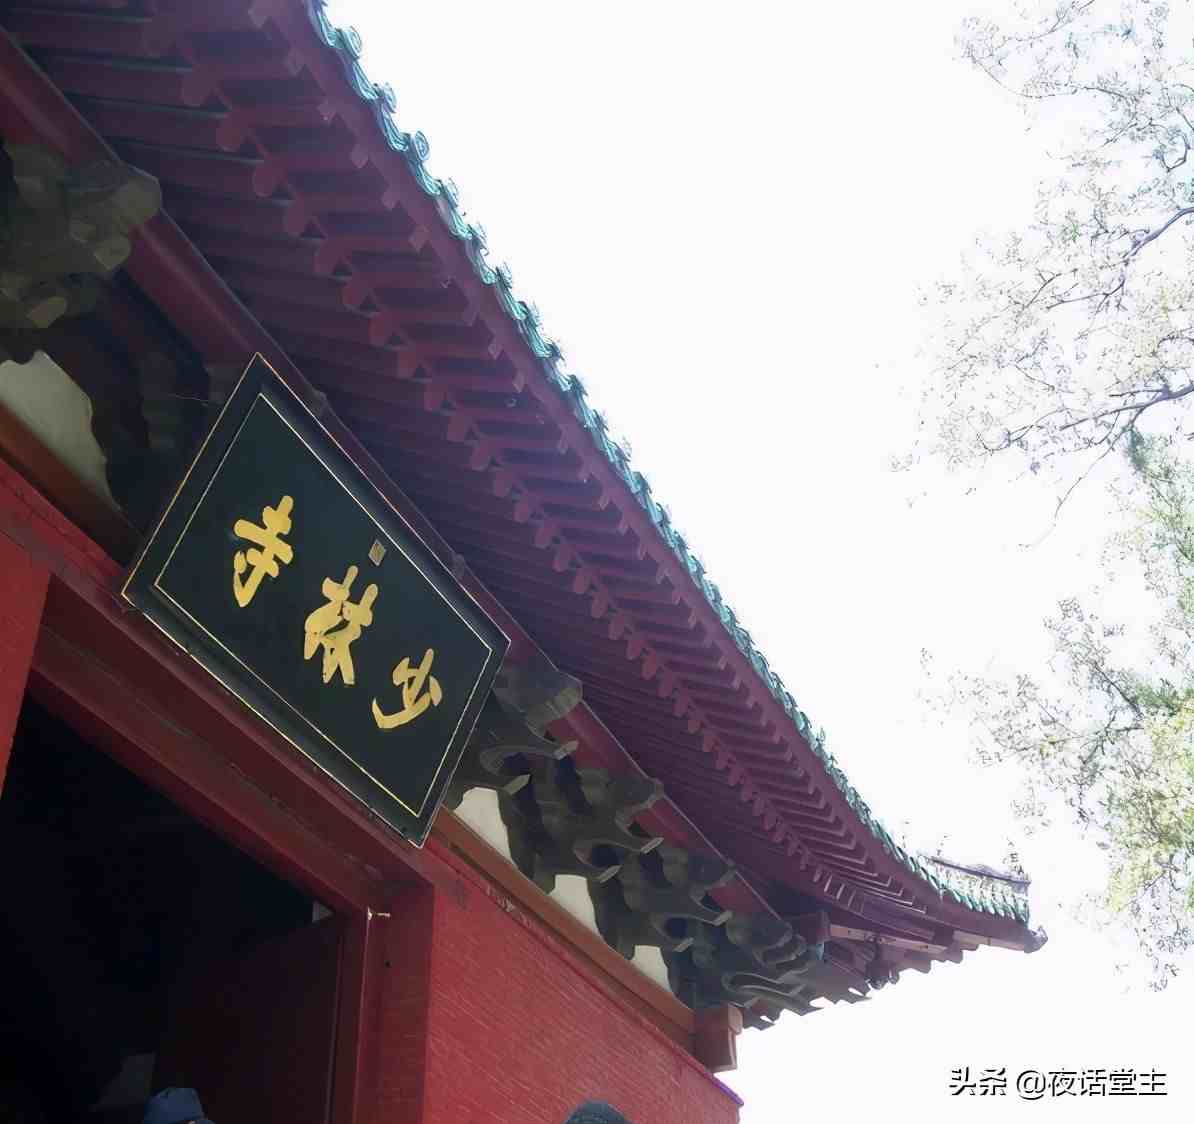 故事：禅宗初祖达摩神通广大，千里迢迢来到中国只为寻找一人